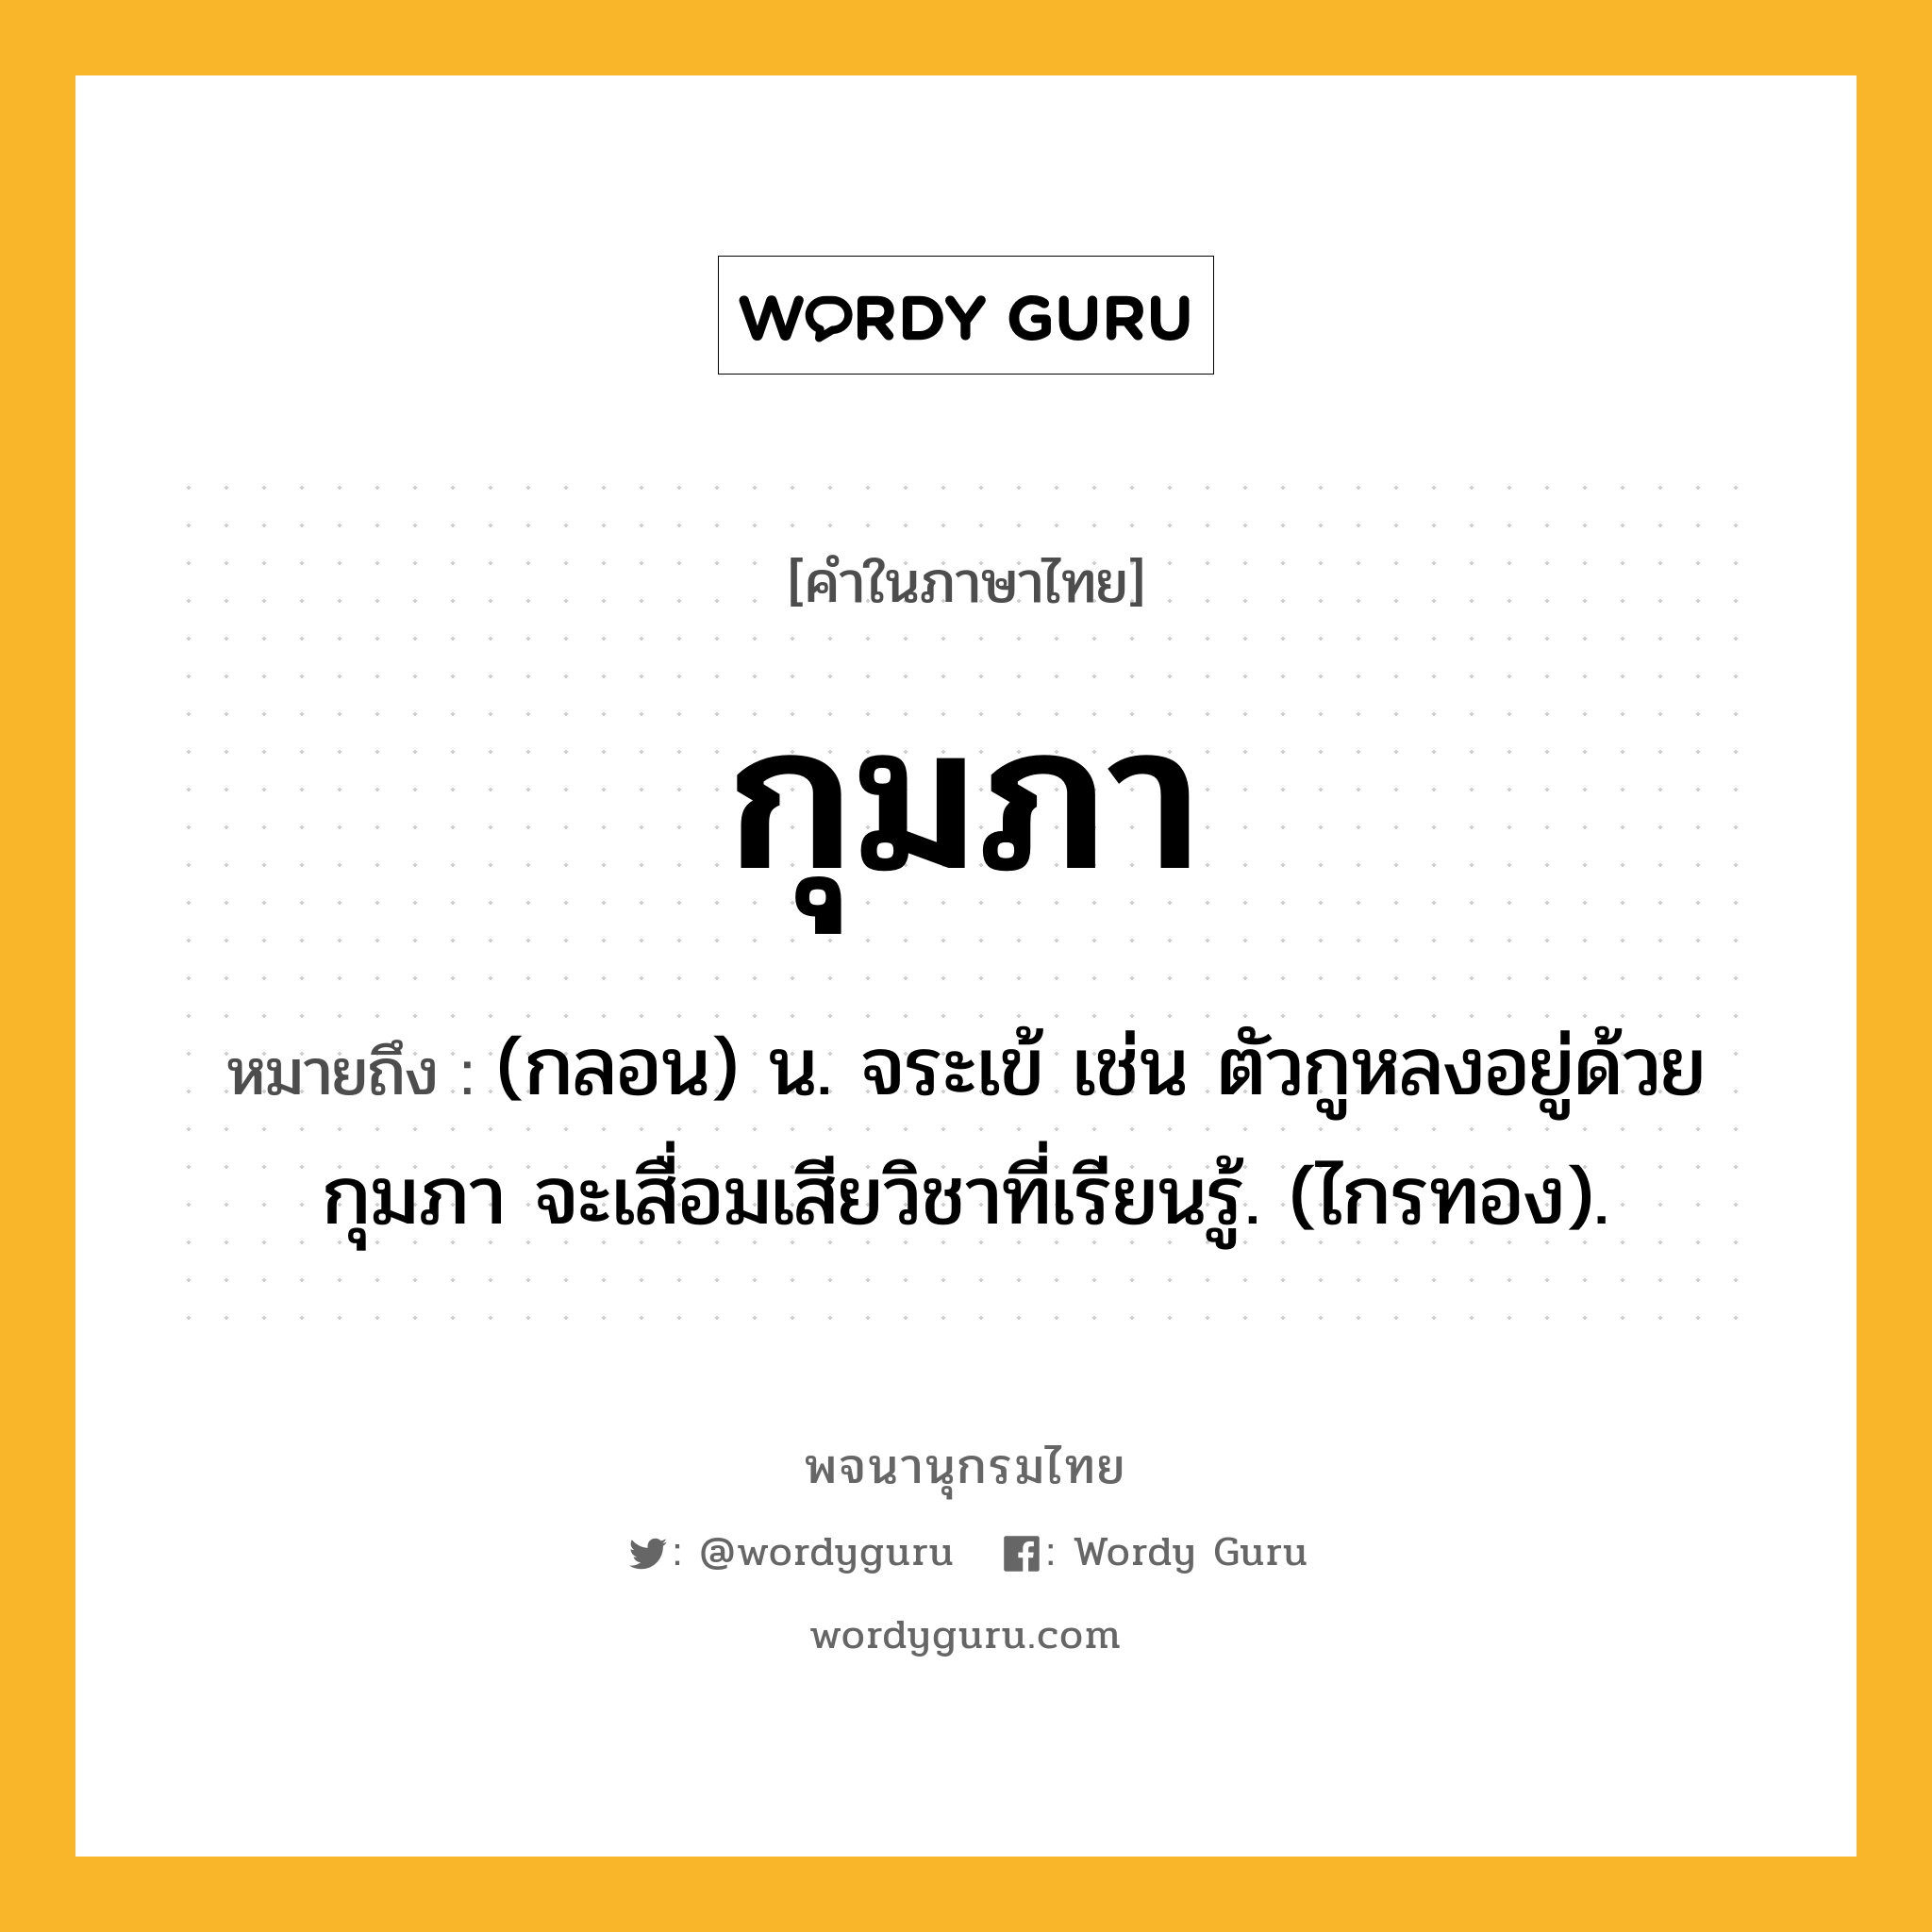 กุมภา ความหมาย หมายถึงอะไร?, คำในภาษาไทย กุมภา หมายถึง (กลอน) น. จระเข้ เช่น ตัวกูหลงอยู่ด้วยกุมภา จะเสื่อมเสียวิชาที่เรียนรู้. (ไกรทอง).